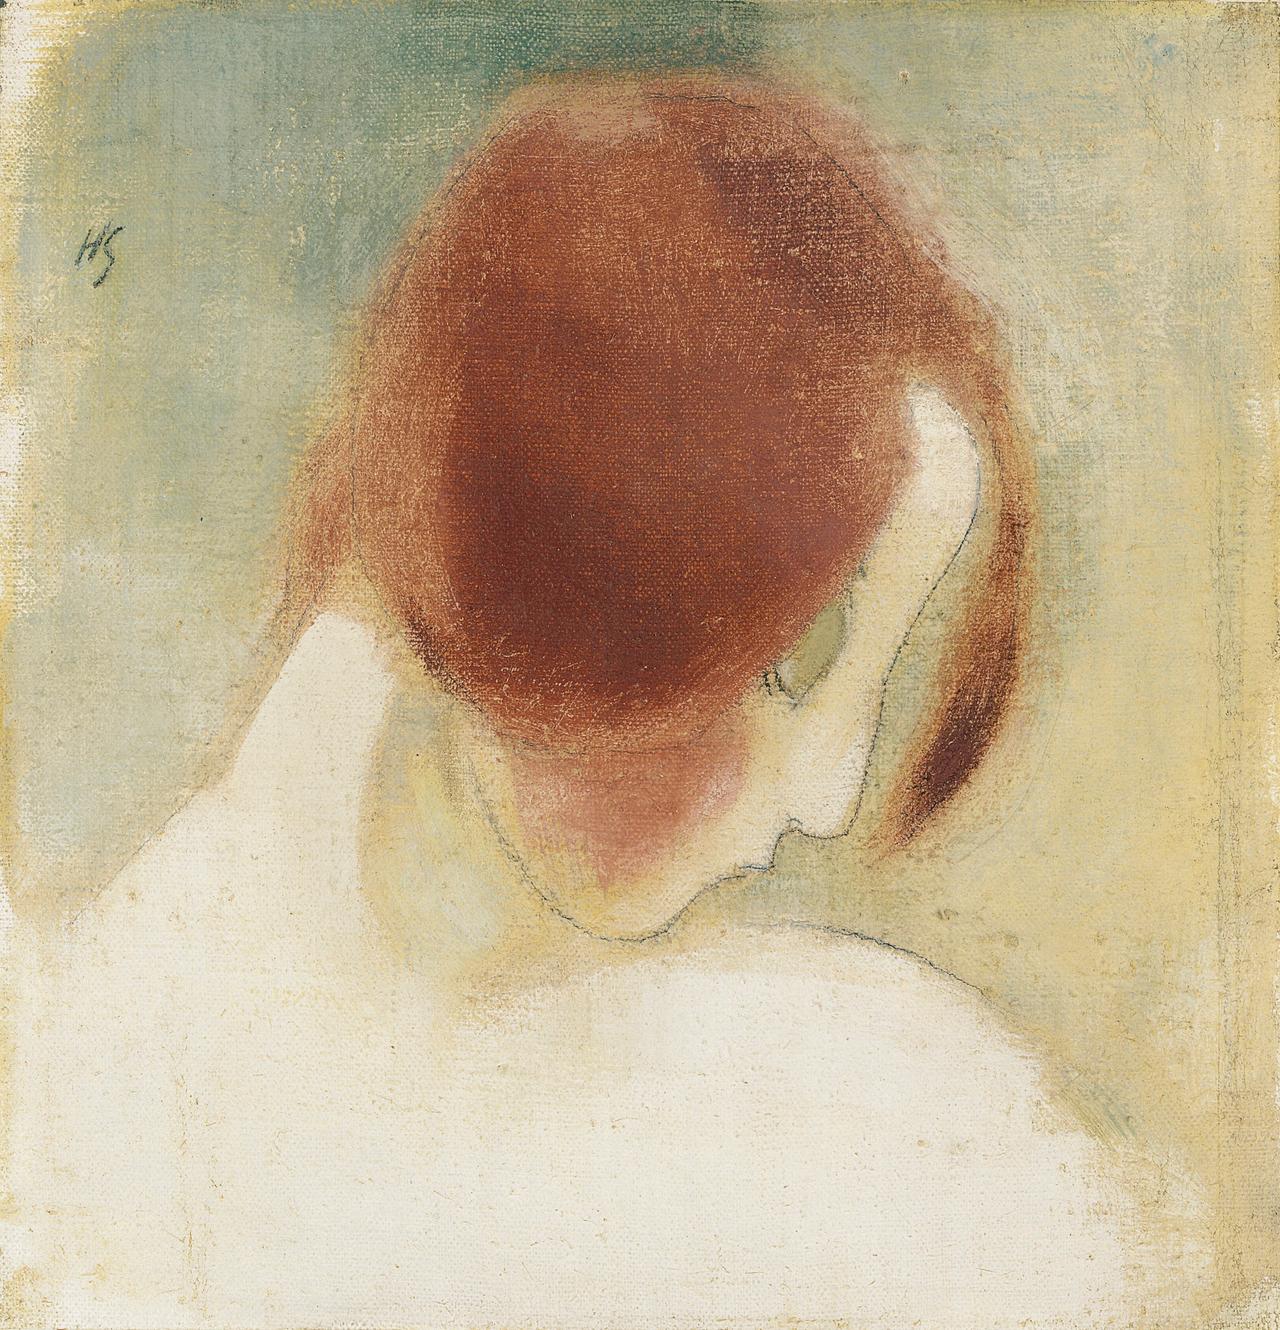 Punainen pää II. Taiteilija Helene Schjerfbeckin öljyväri- ja lyijykynätyö kankaalle vuodelta 1915.